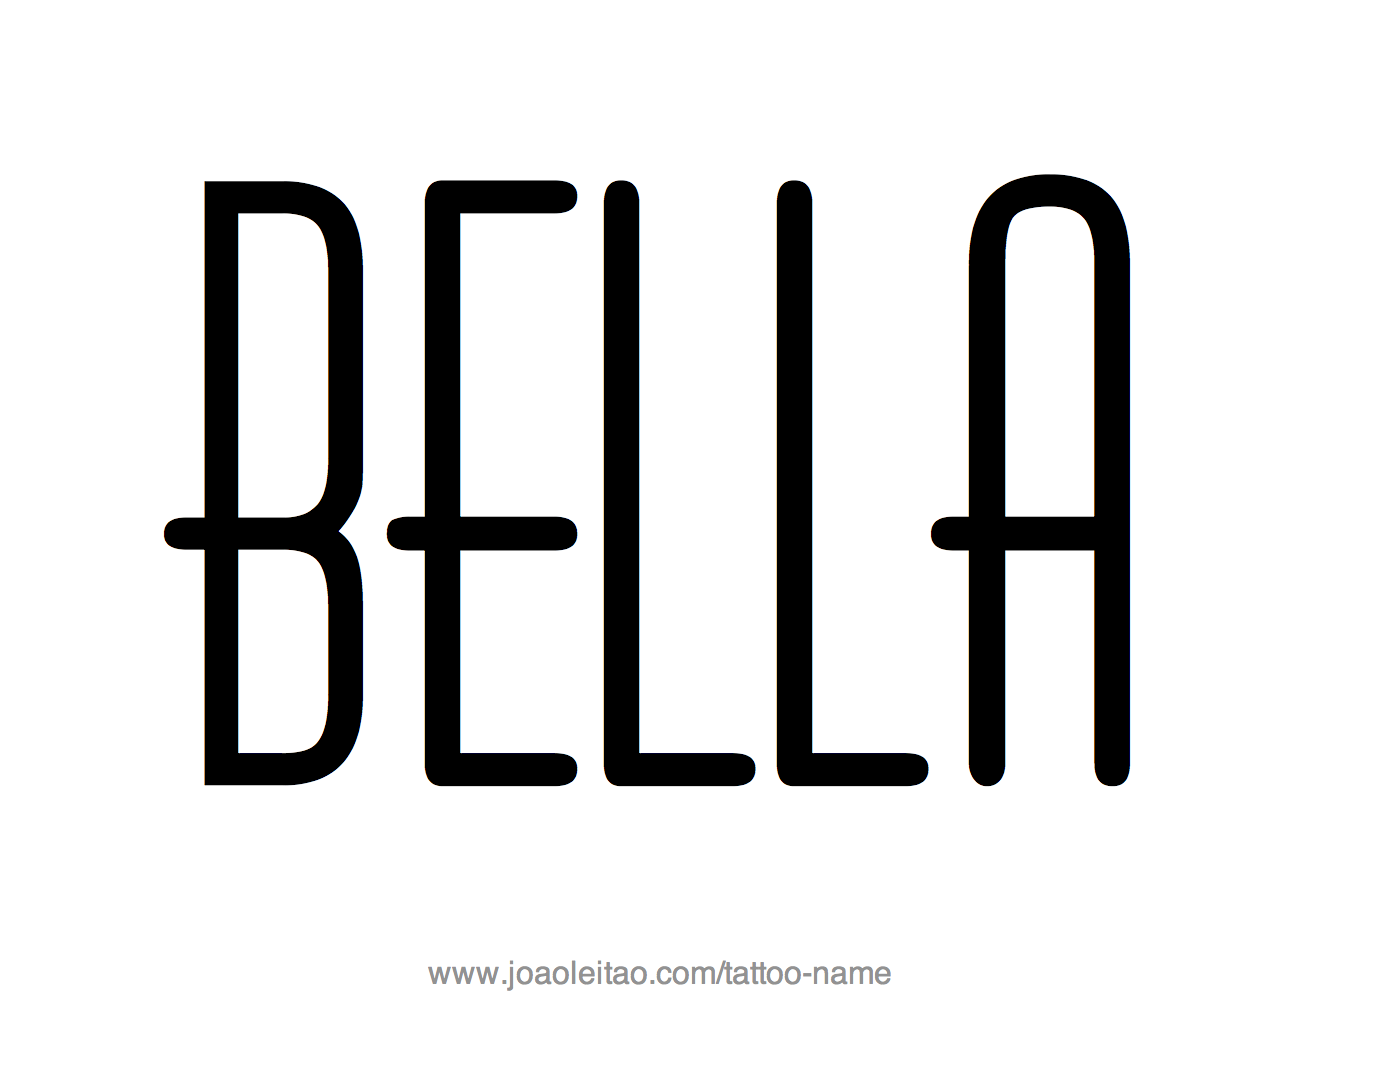 Tattoo Design Name Bella 